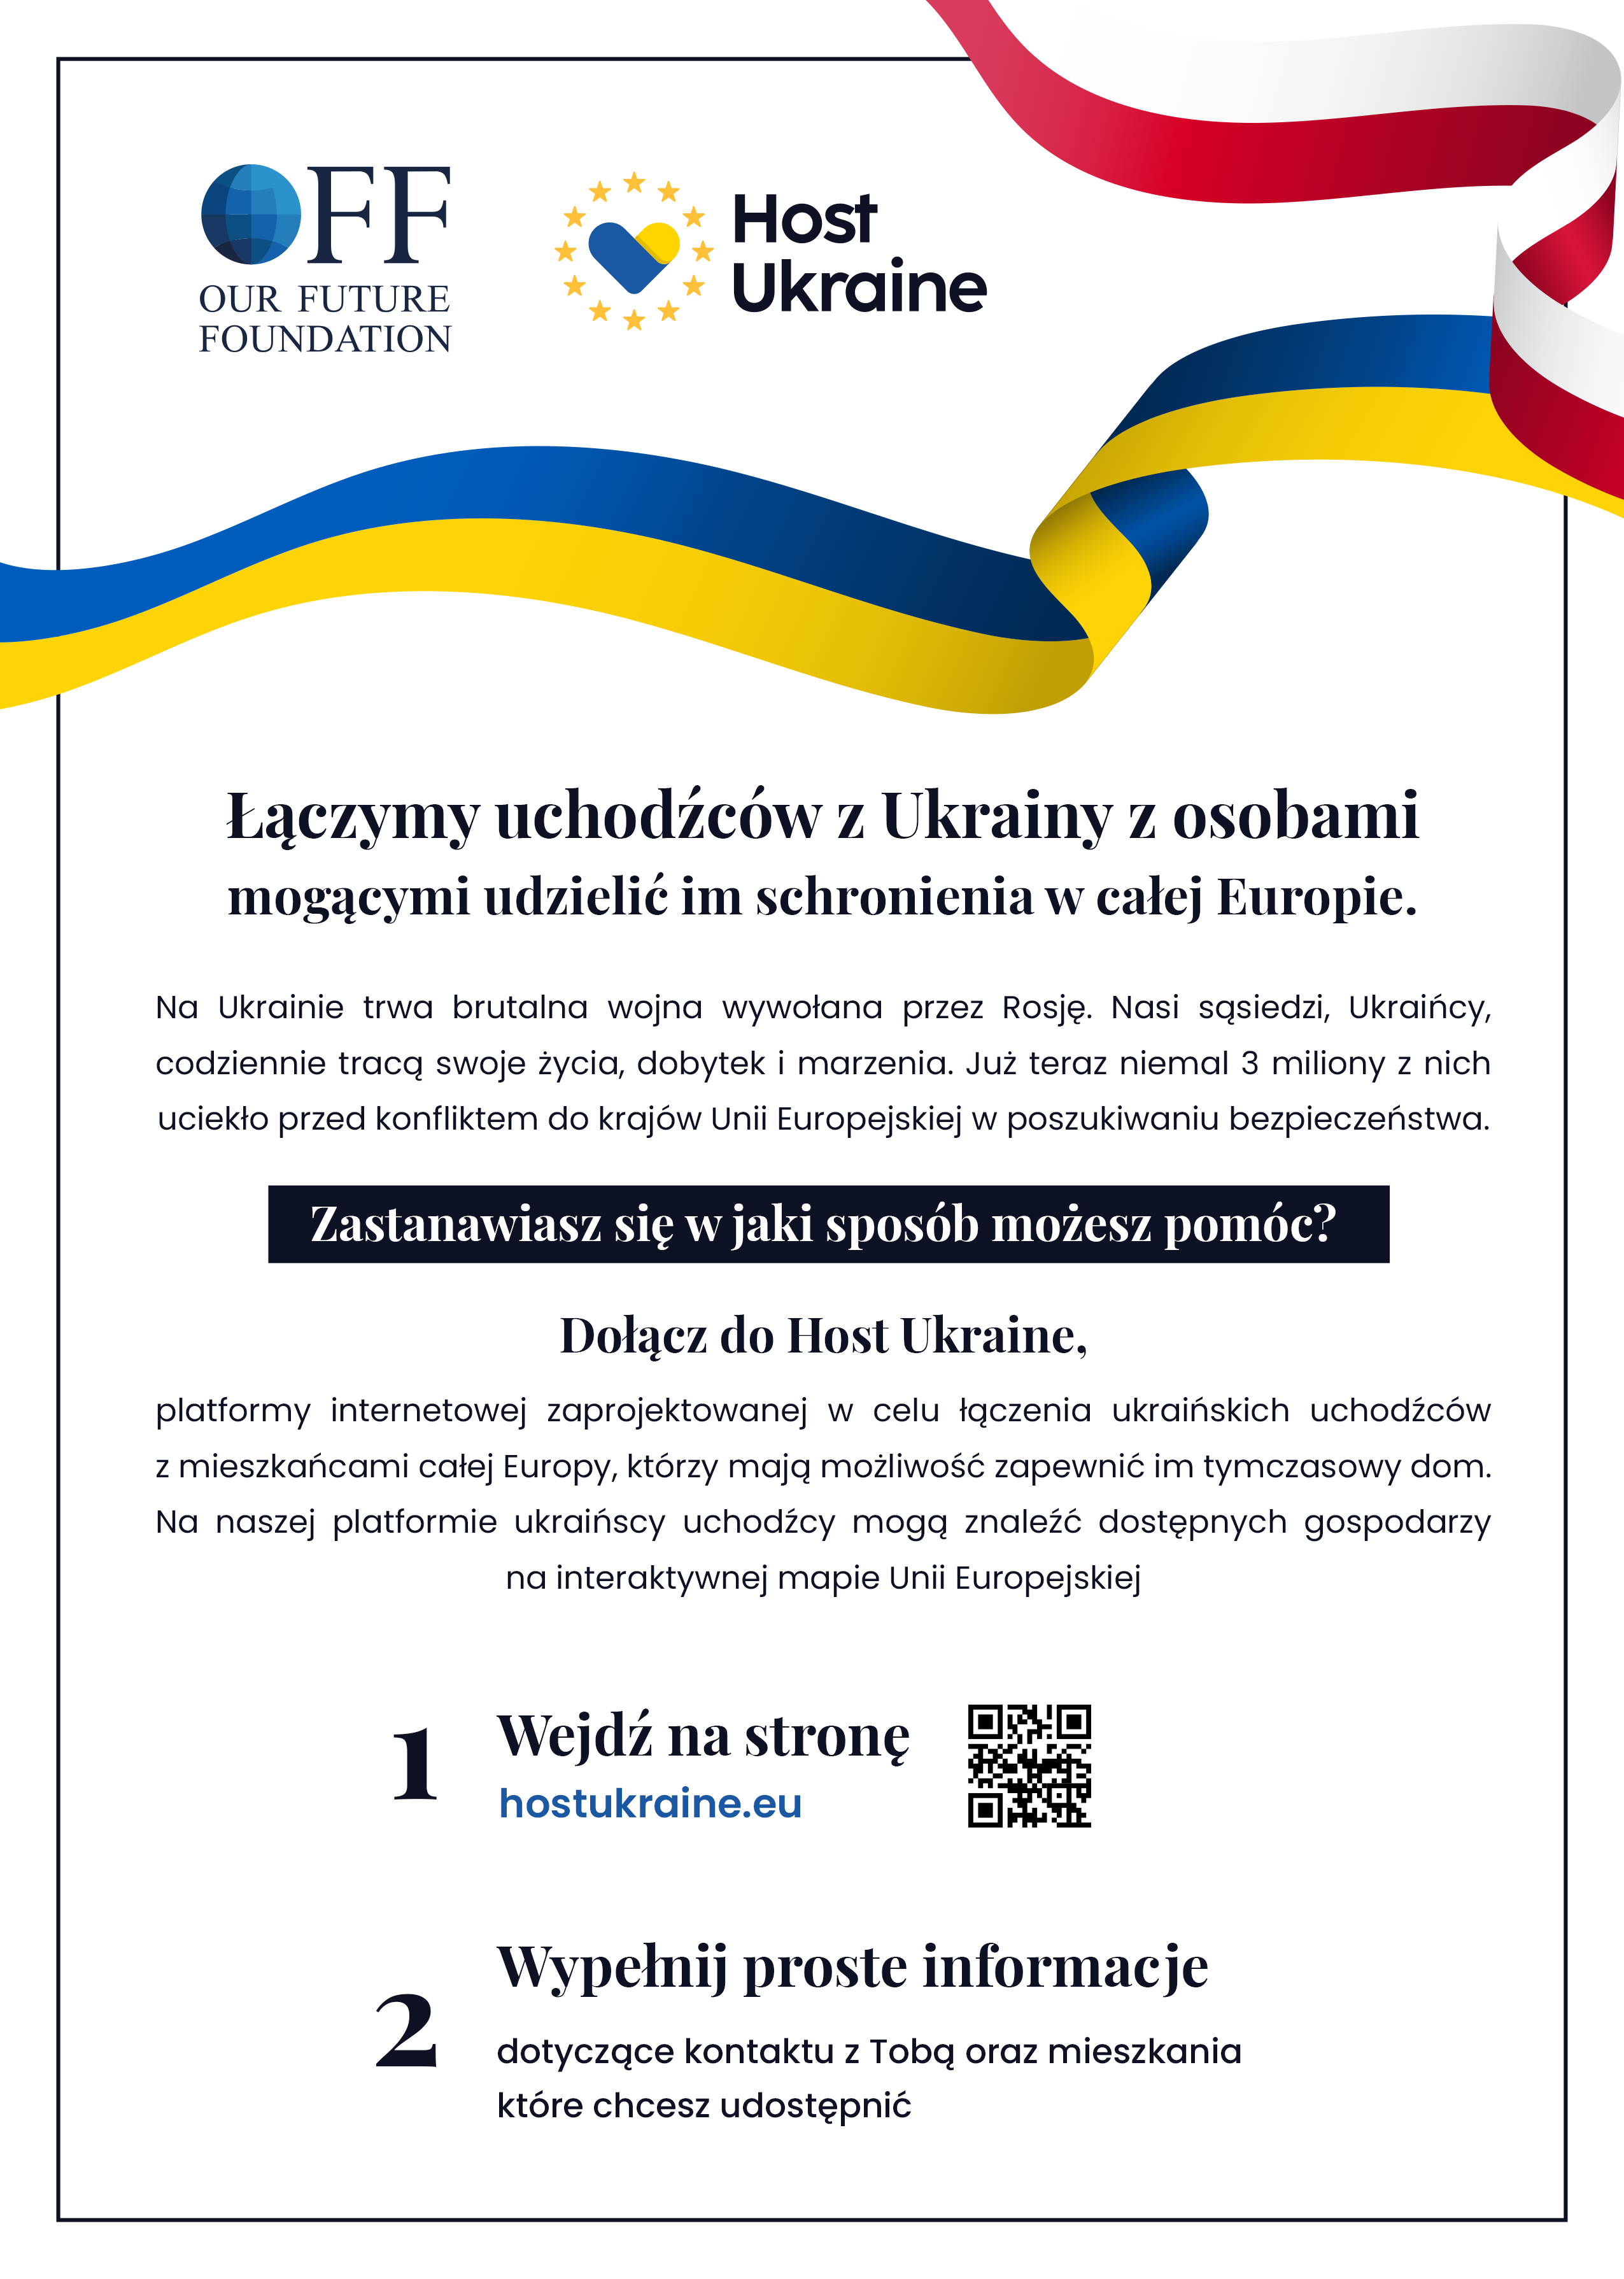 Host Ukraine - nowa platforma internetowa